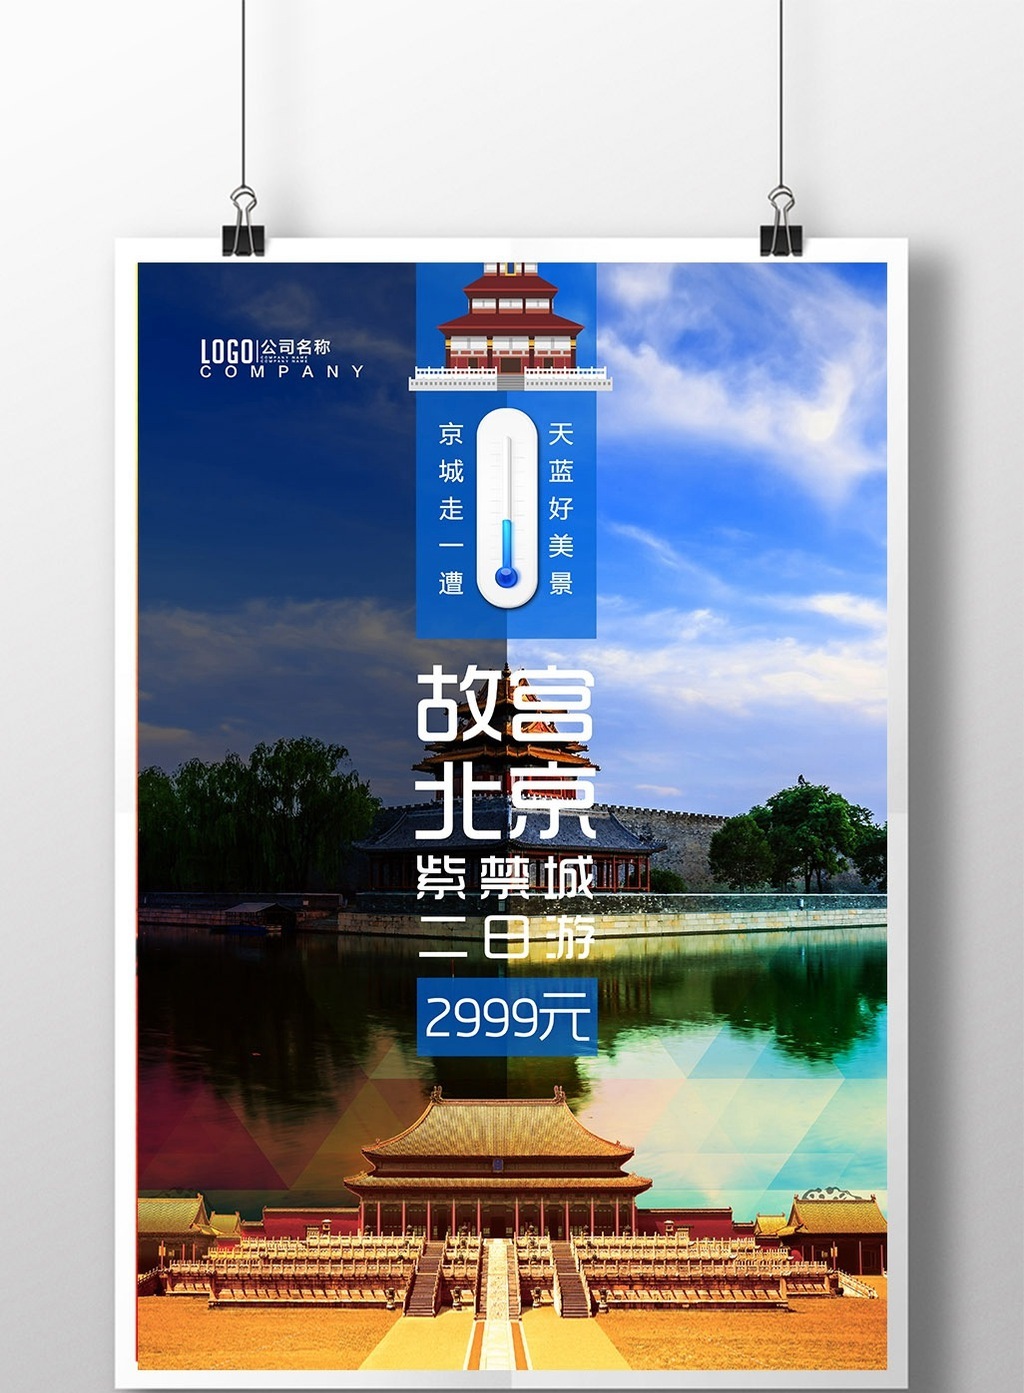 包图 广告设计 海报 > 北京旅游故宫印象紫禁城海报  上传时间2017-05